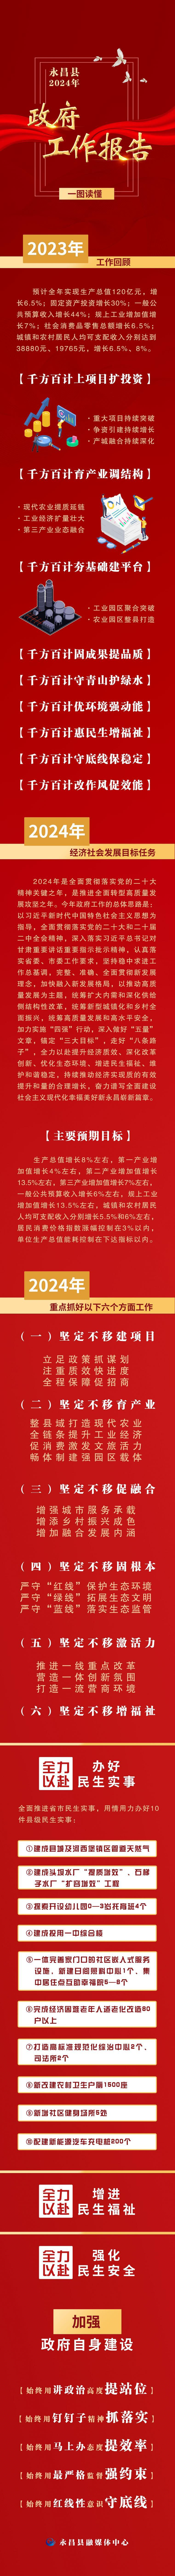 图解永昌政府工作报告　今年瞄准这些关键词发力